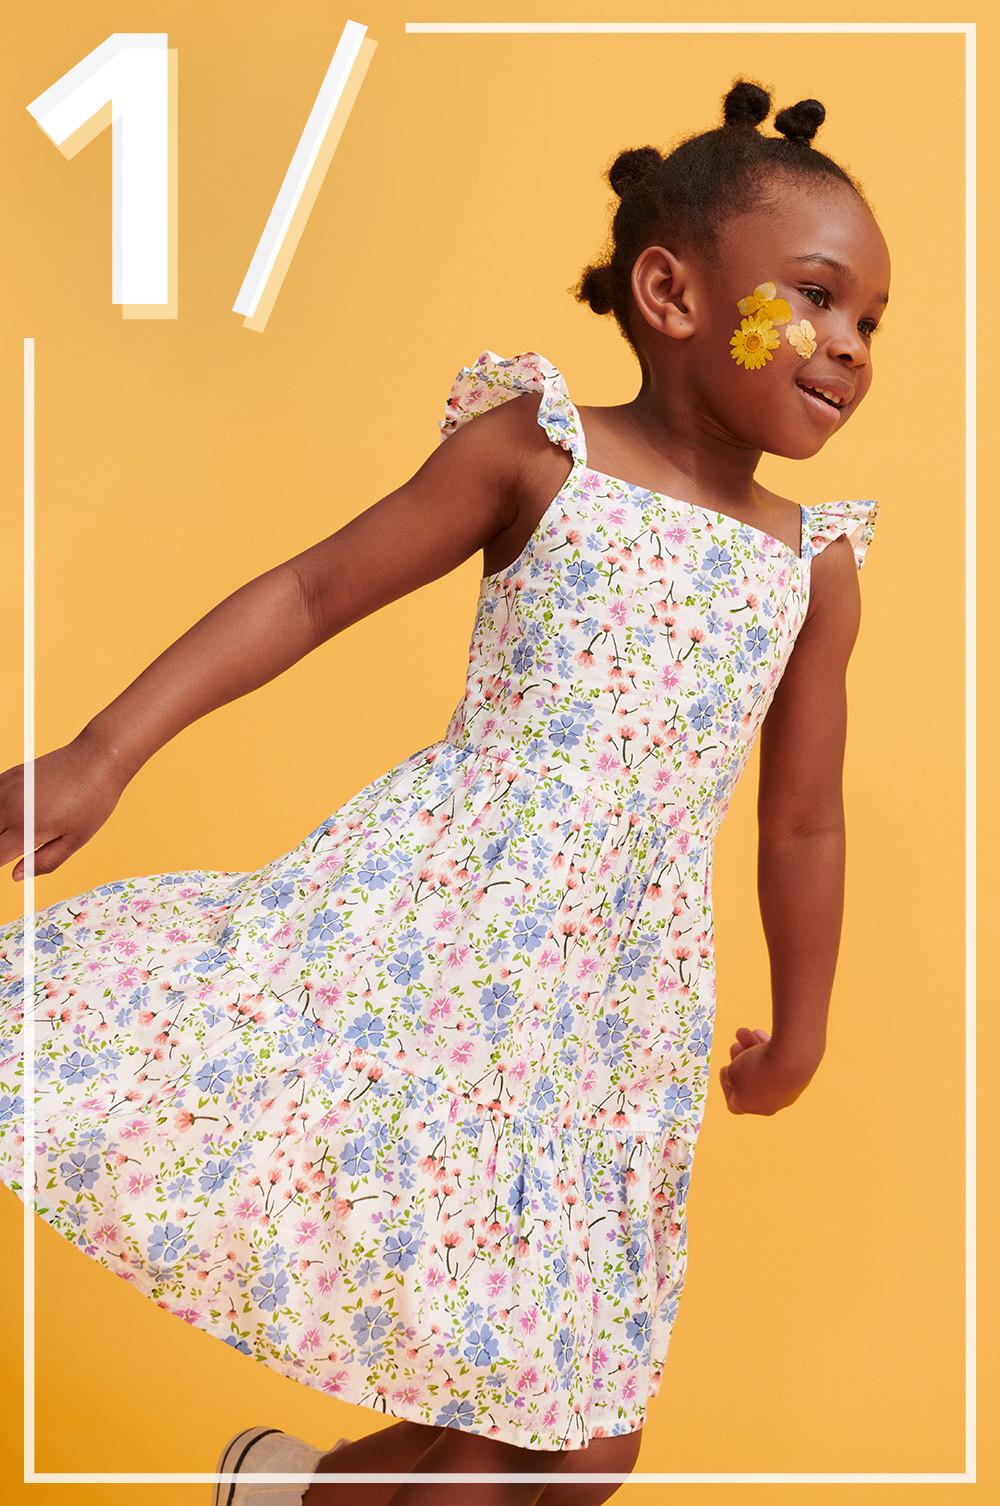 Kind in lockerem Kleid mit Blumenmuster